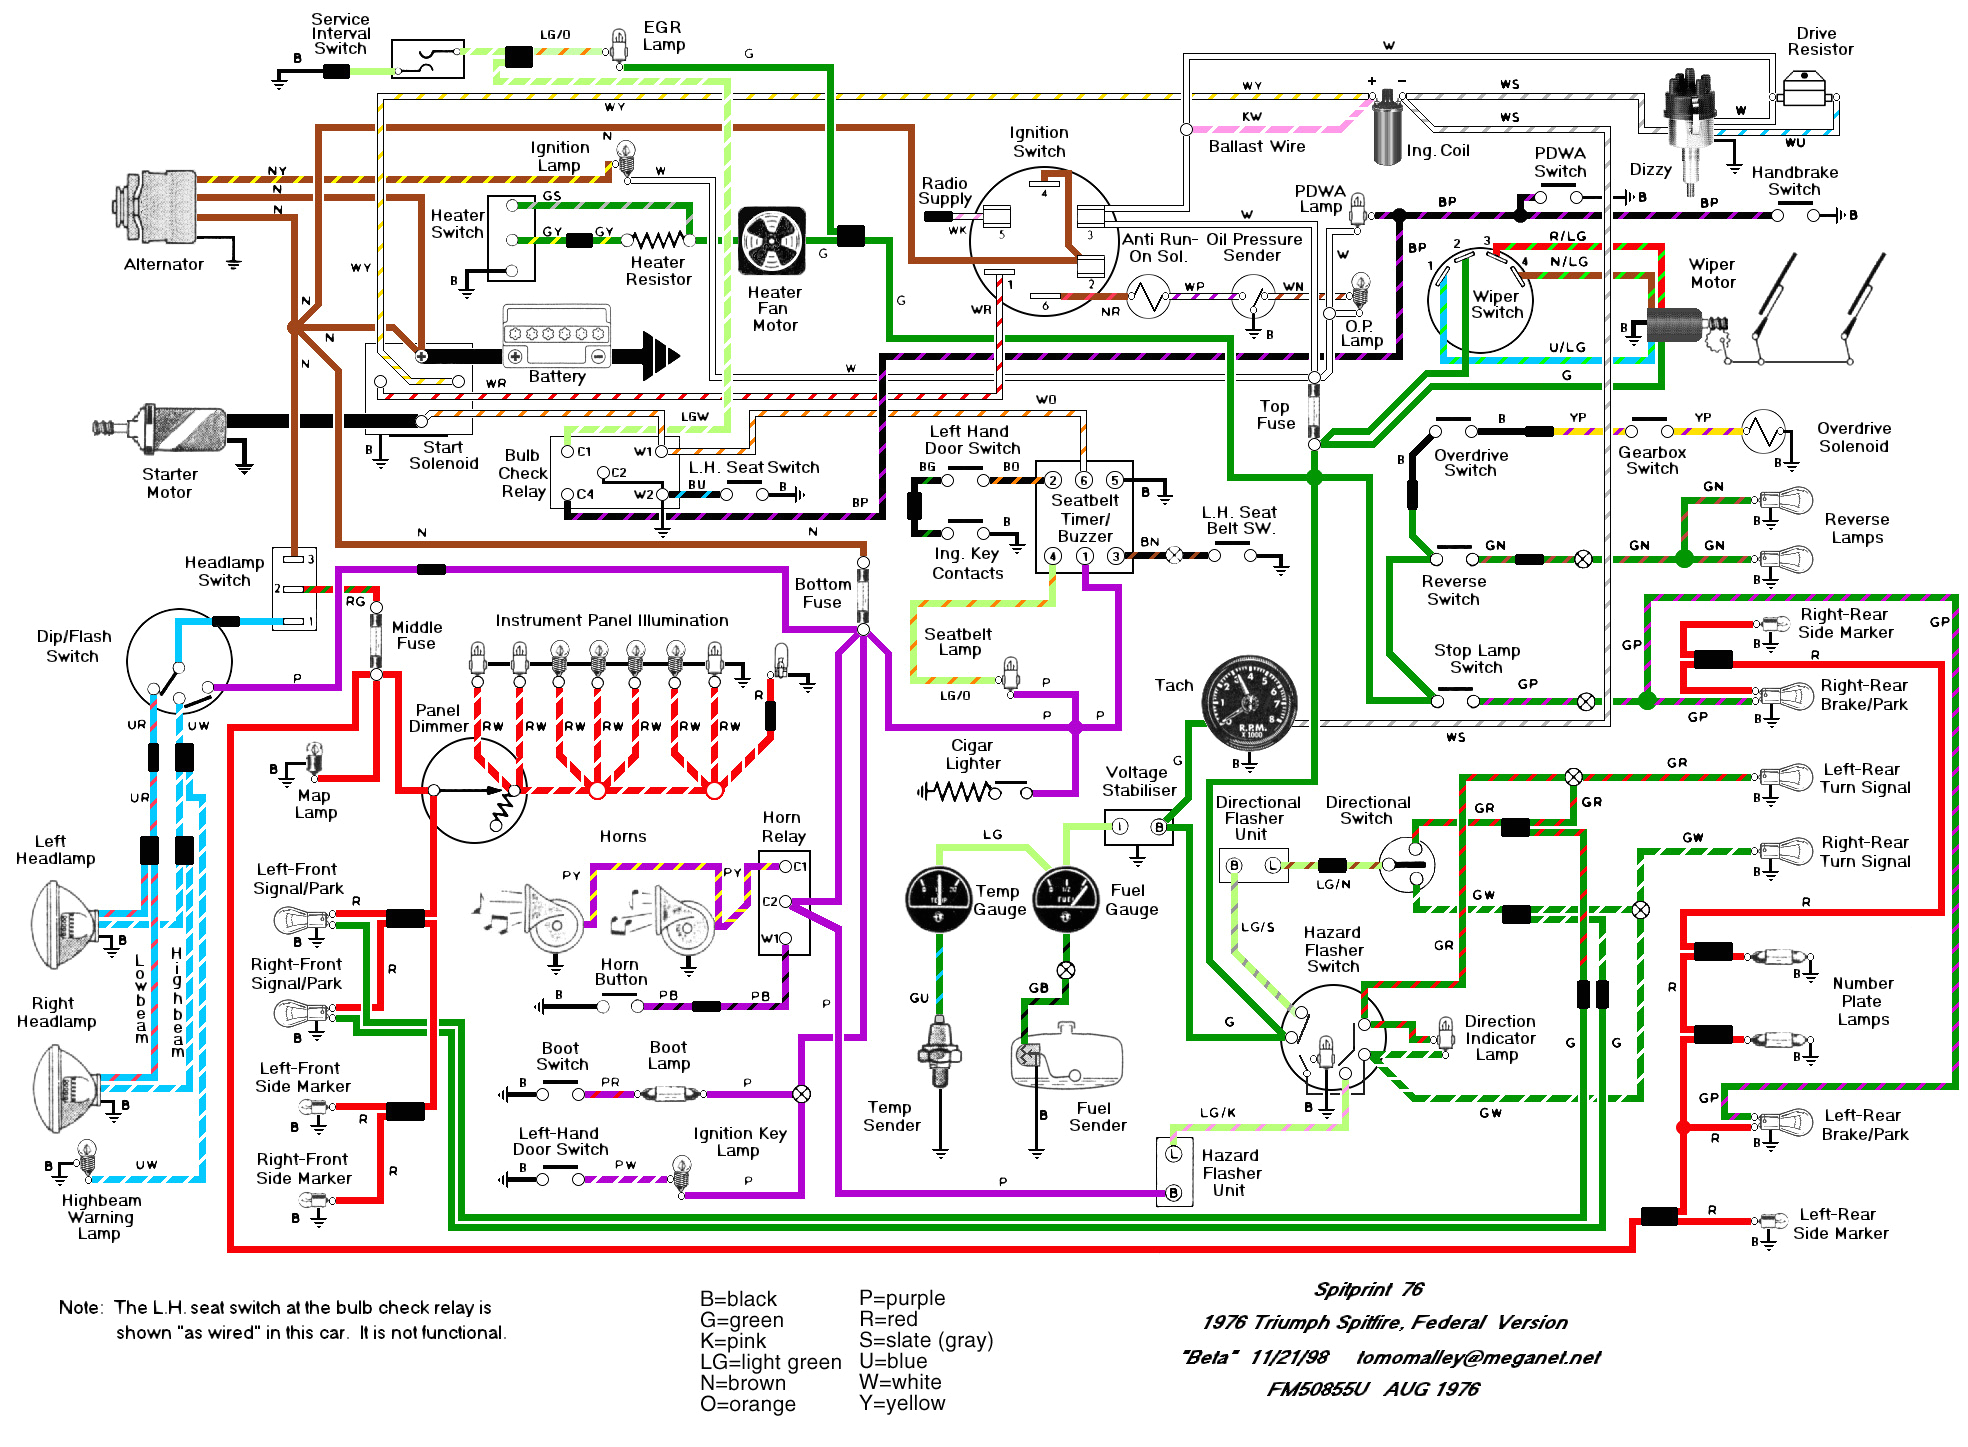 car wiring harness diagram wiring diagram schema auto wiring harness diagram schema diagram database club car